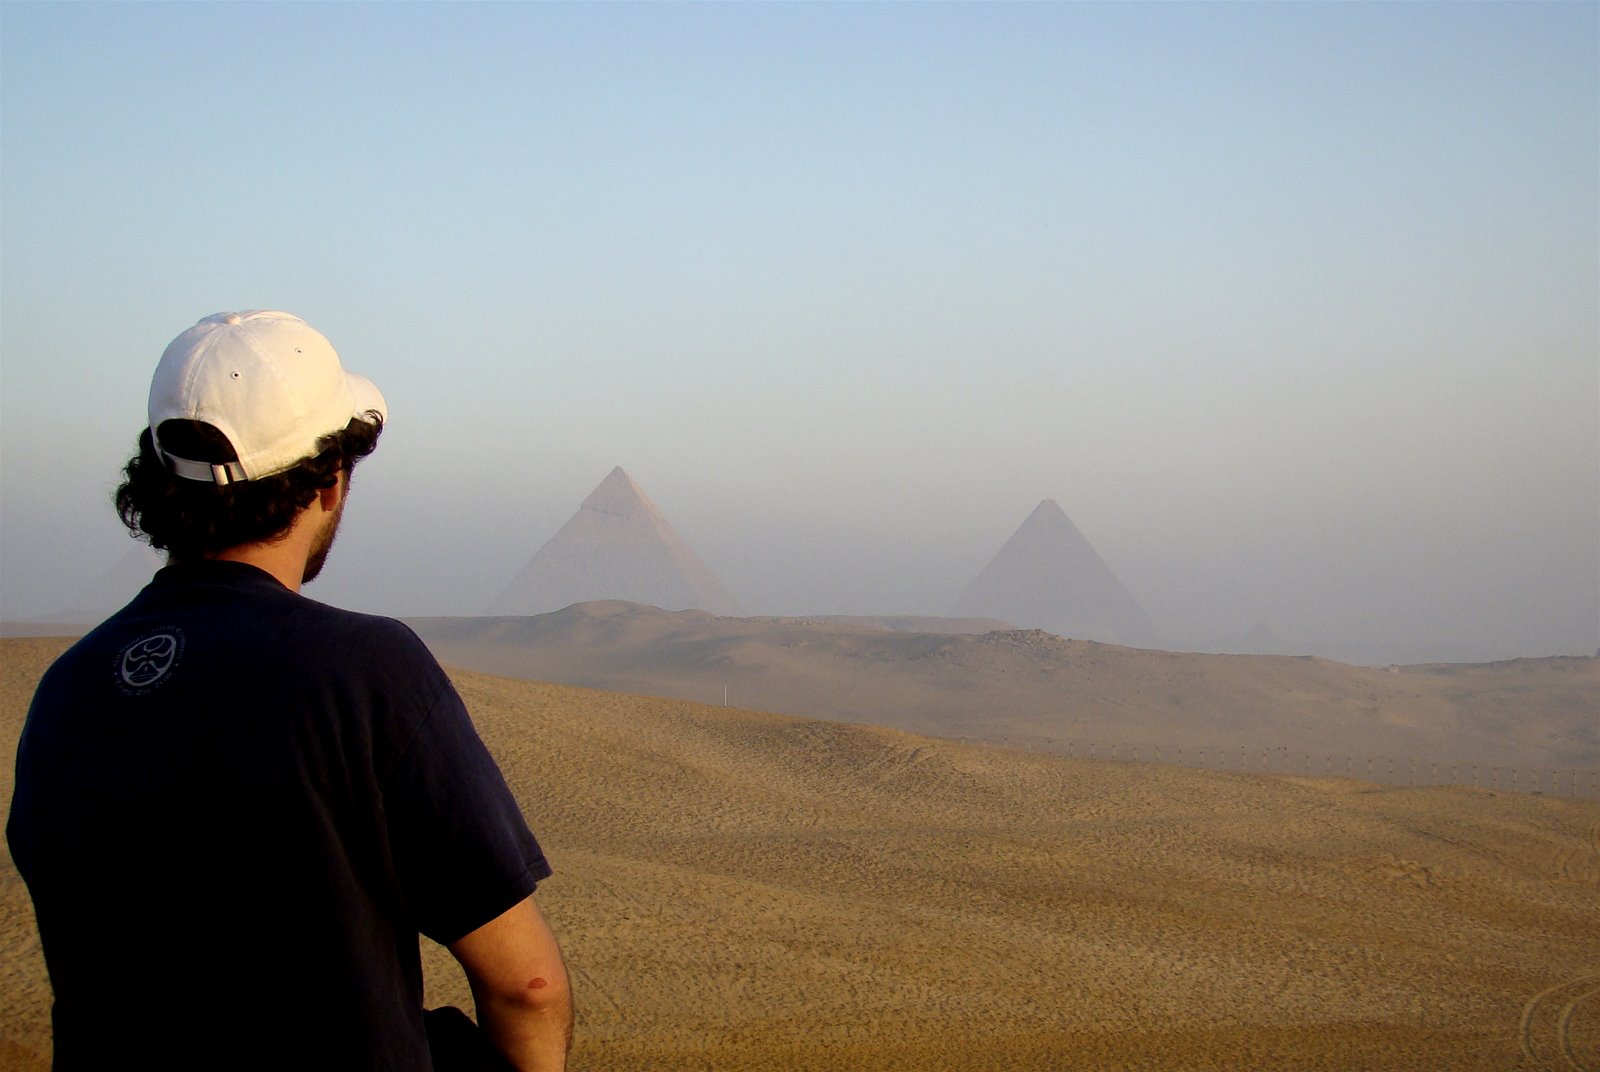 [ï€¡ï€¡ï€¡Gary+stare+at+pyramids.JPG]